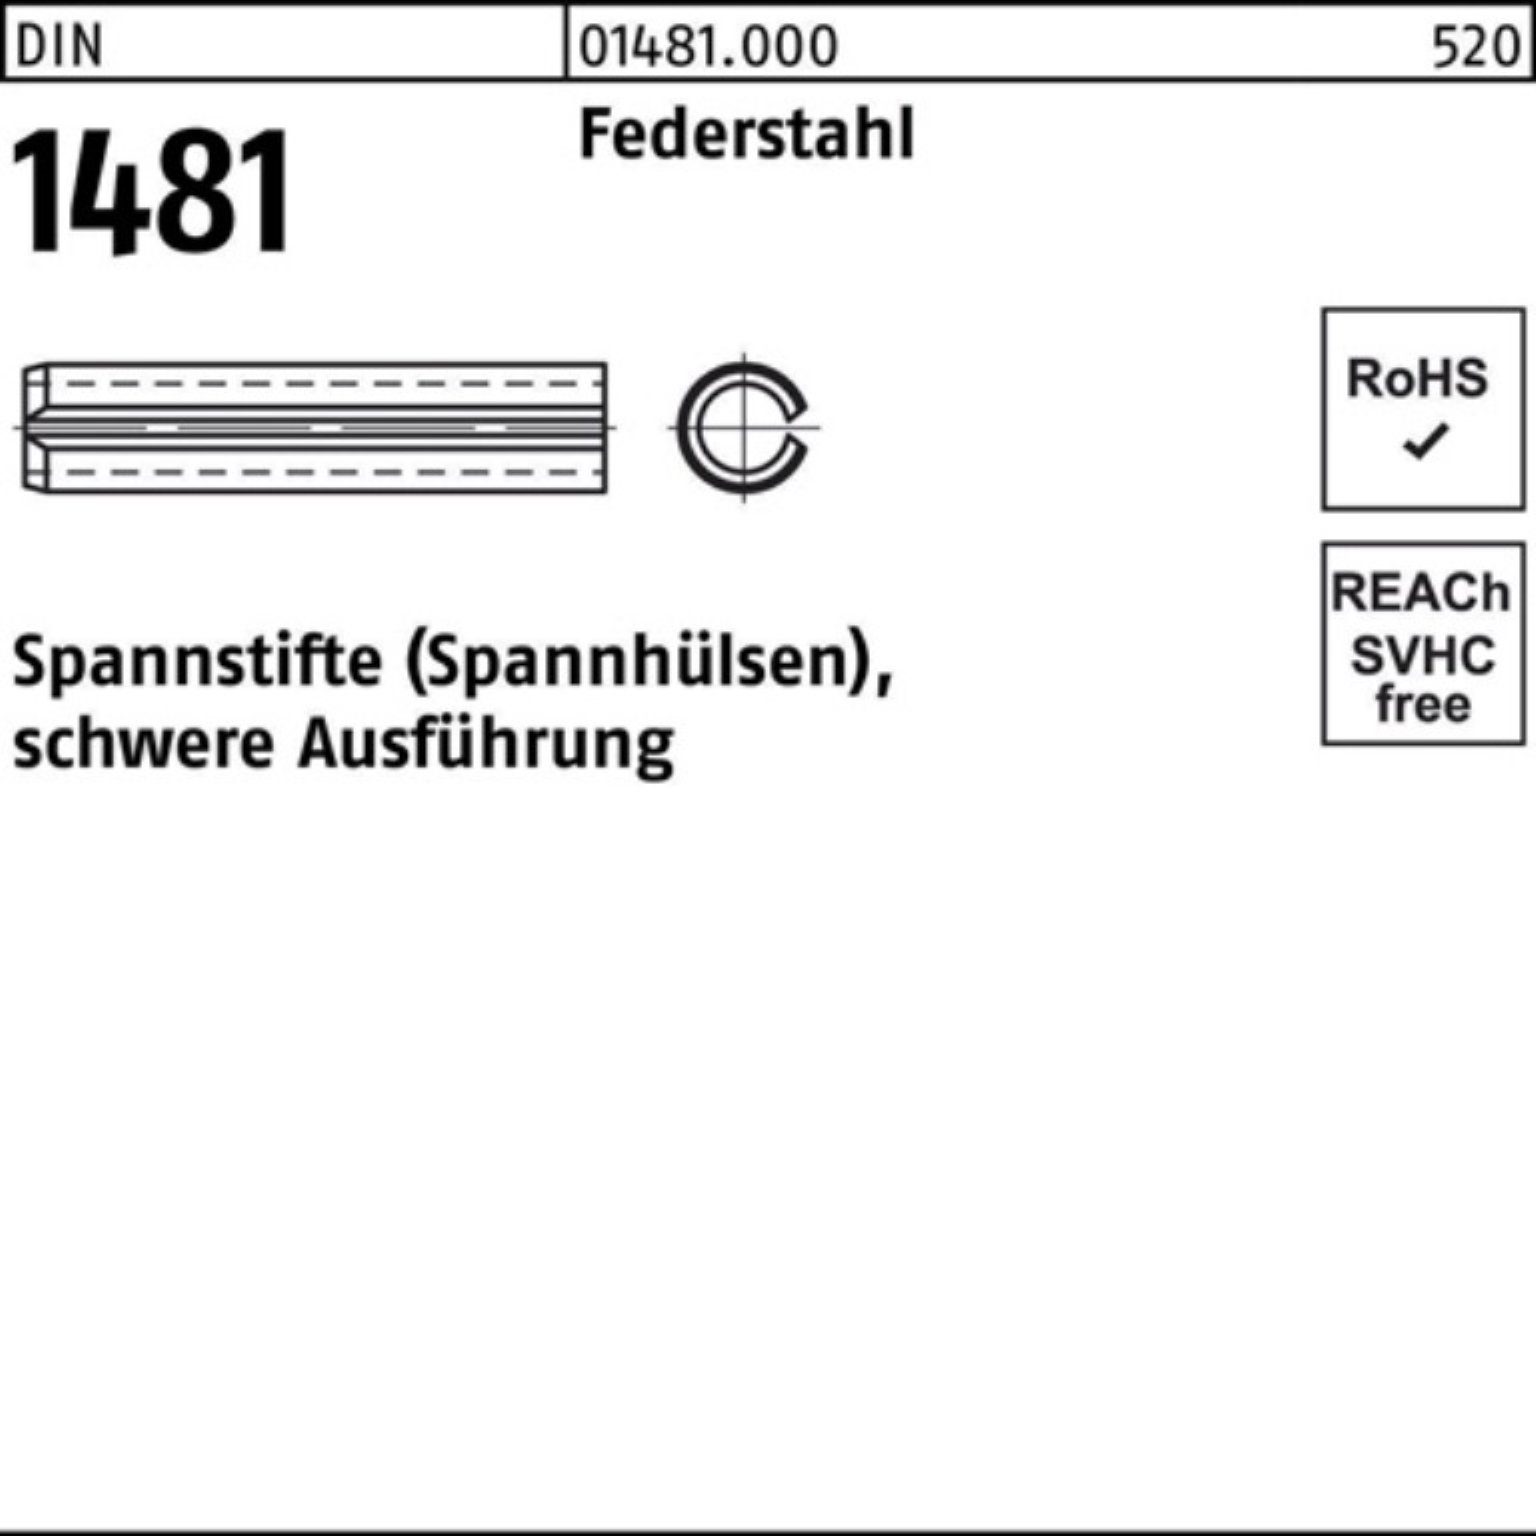 Reyher Spannstift 200er Pack Spannstift DIN 1481 1x 20 Federstahl schwere Ausführung 20